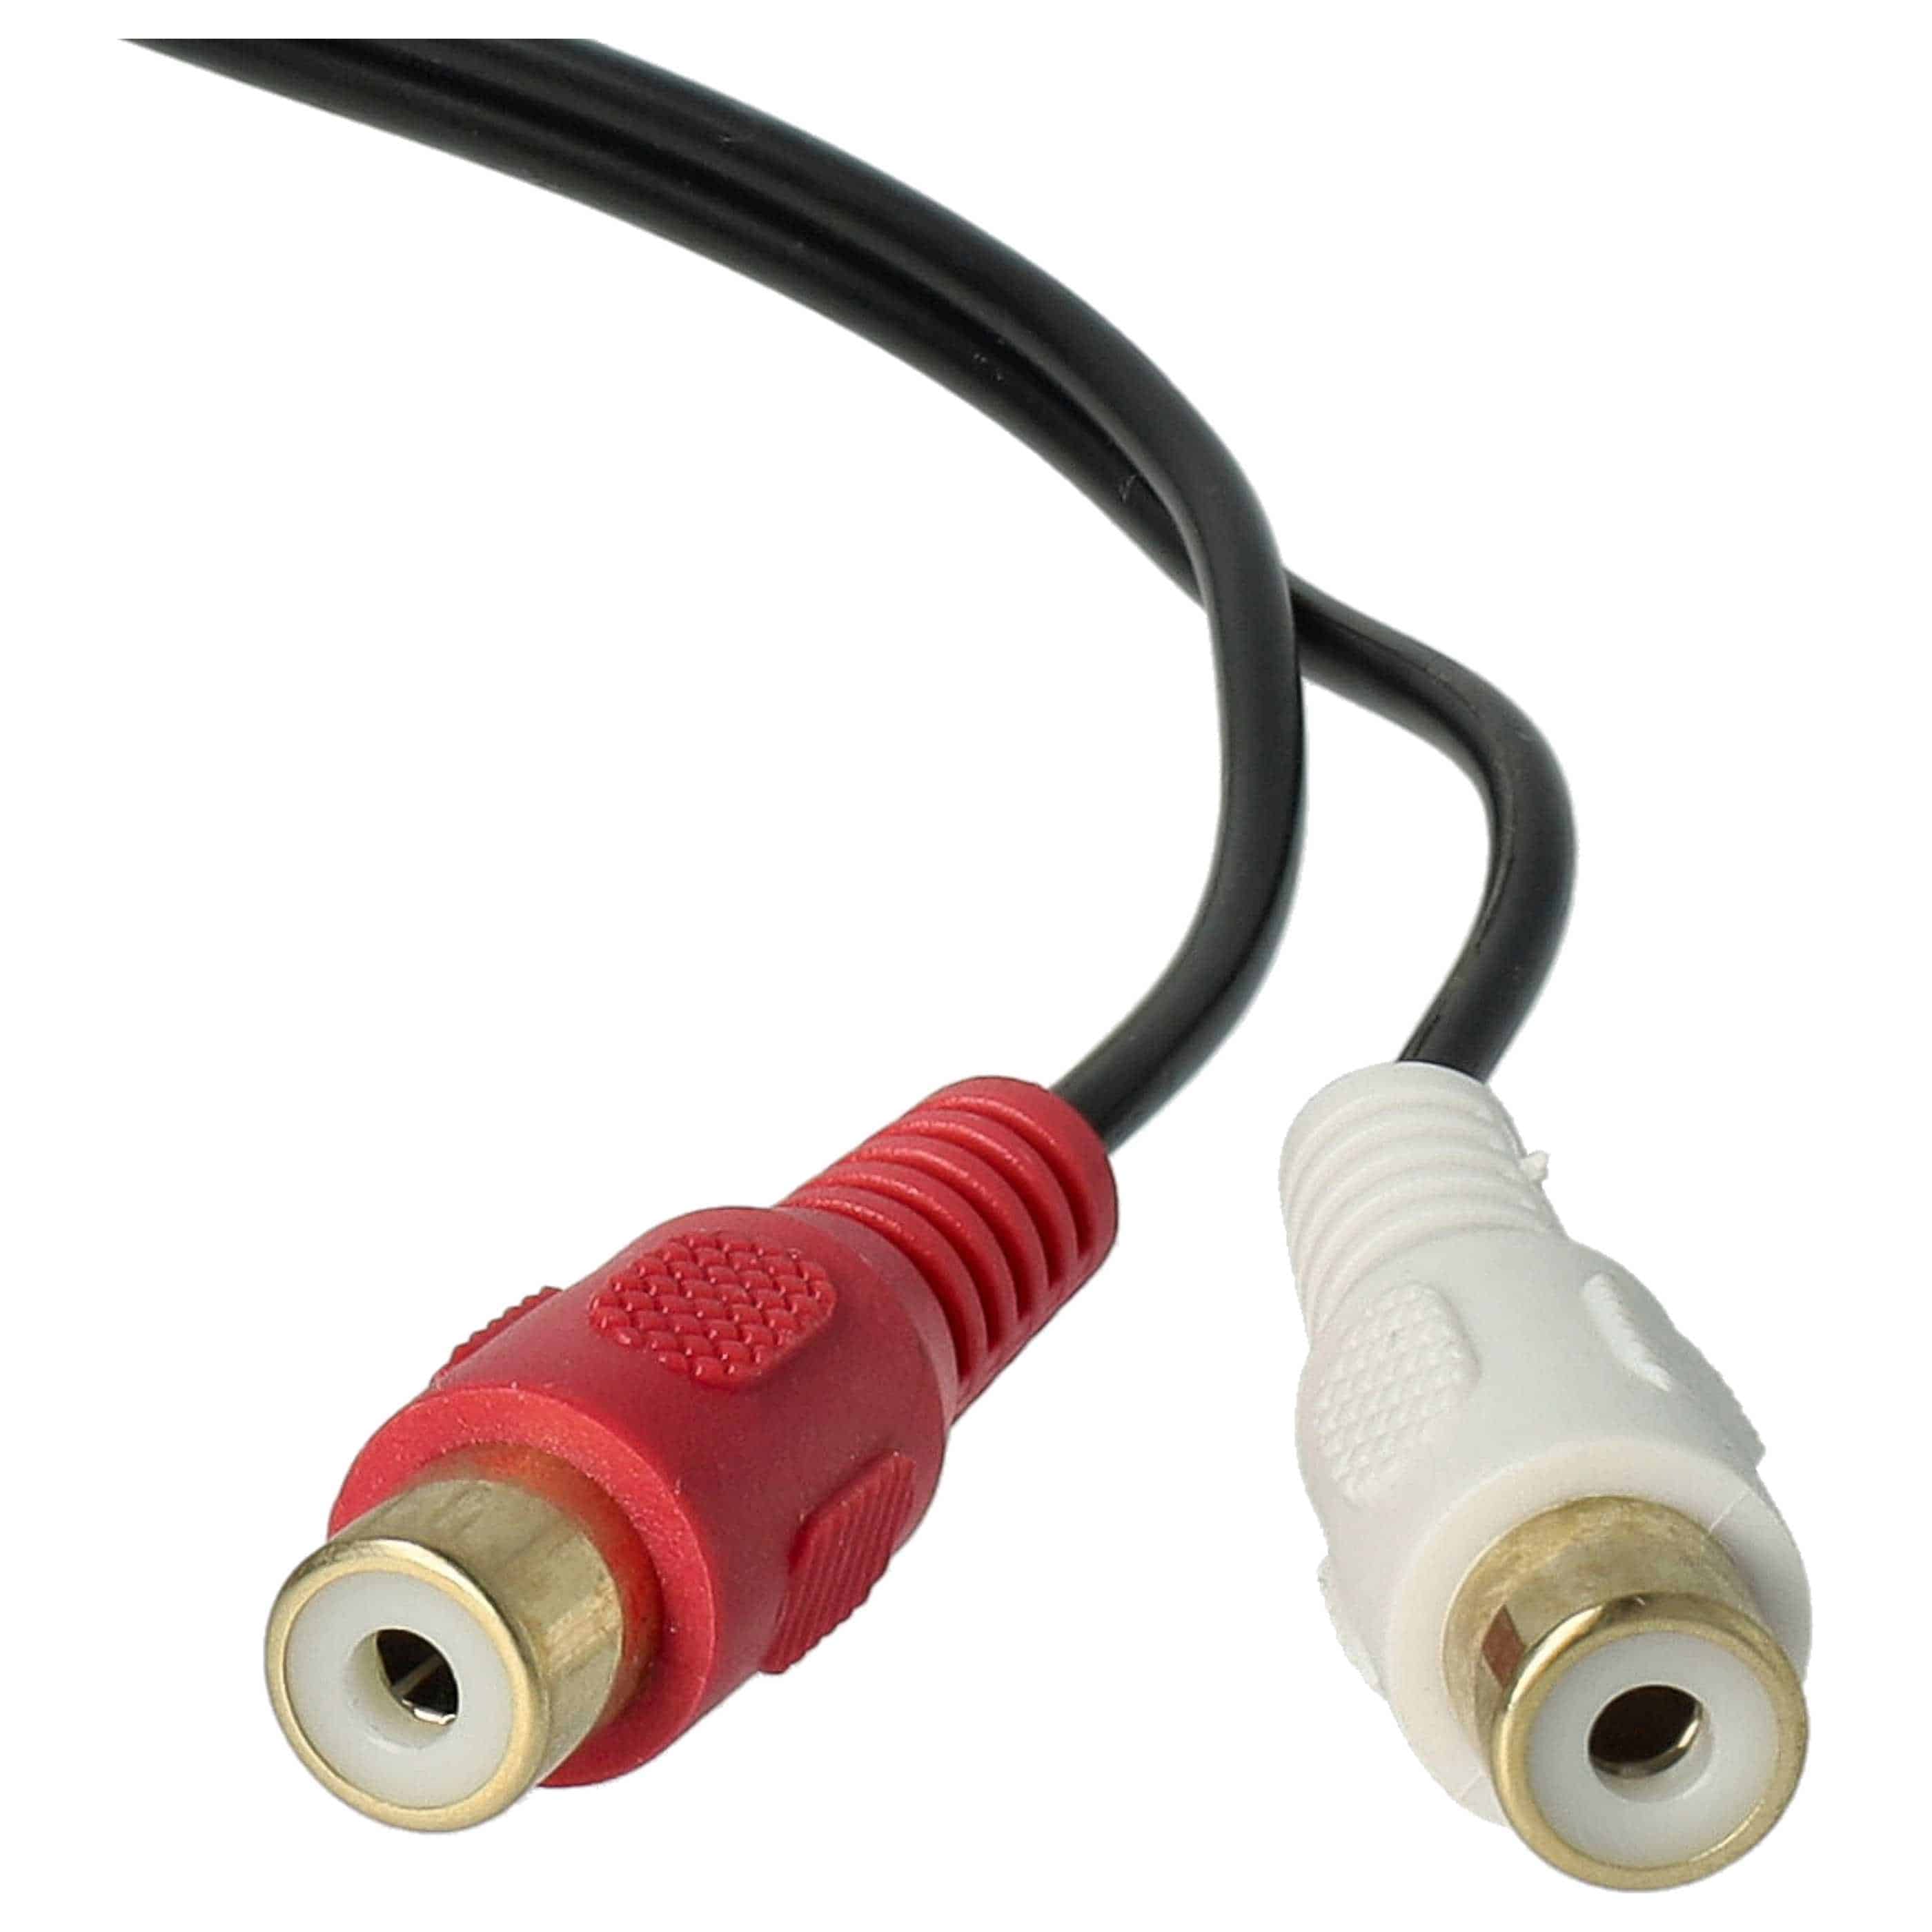 Audio Kabel als Ersatz für JVC / Alpine KCA-121B für Autoradio - 60 cm lang